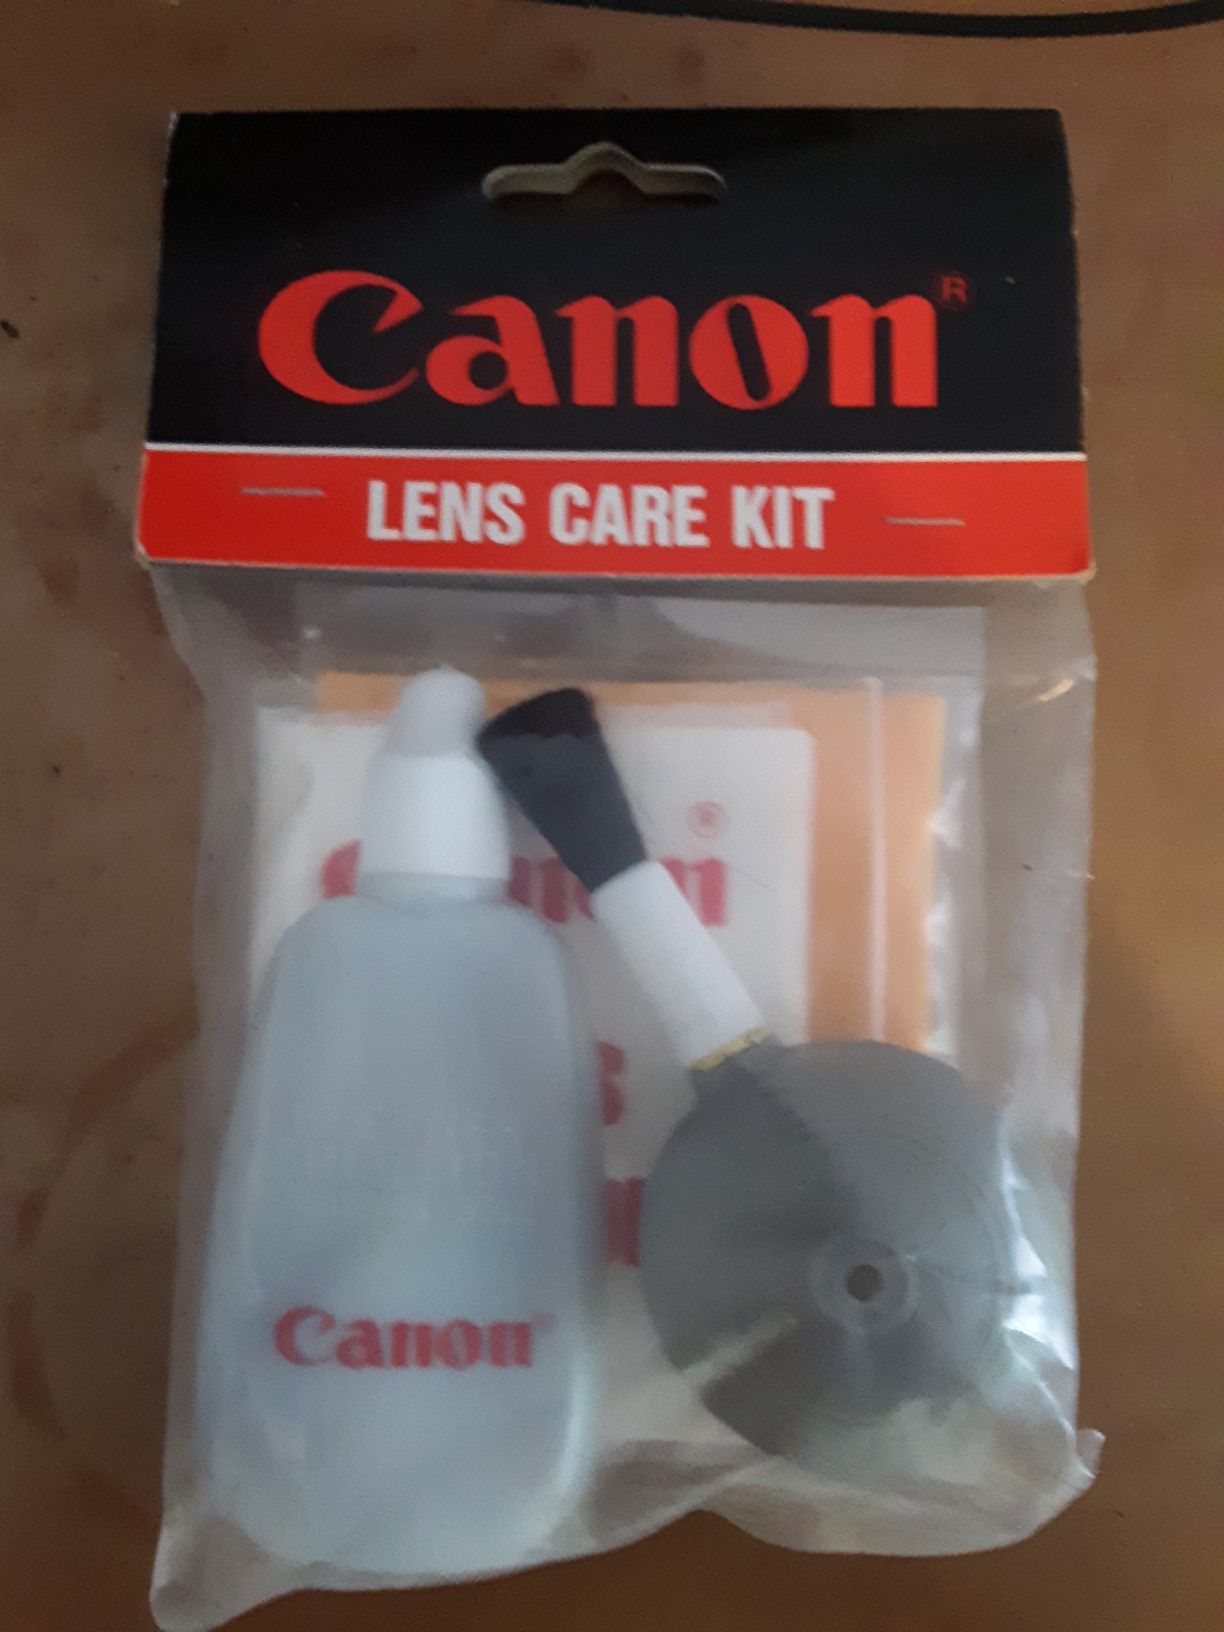 Camera lens care kit